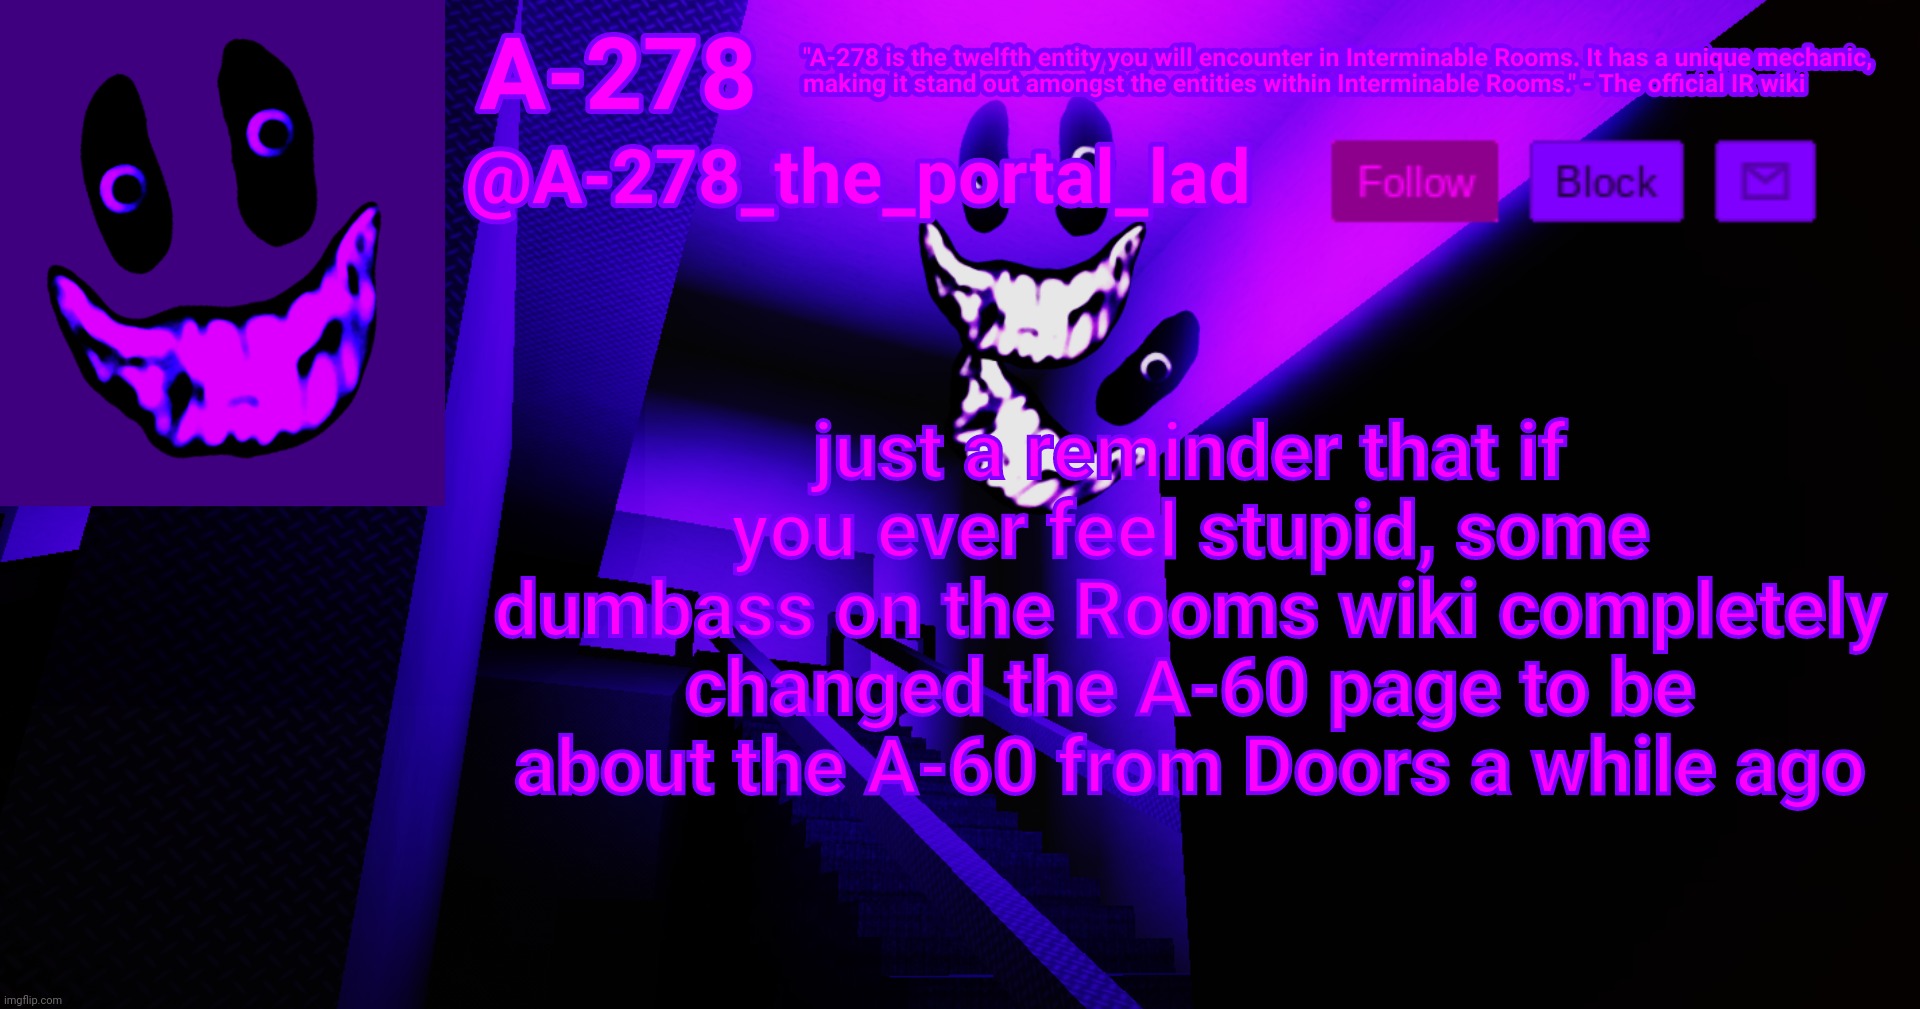 Rooms but Doors Wiki